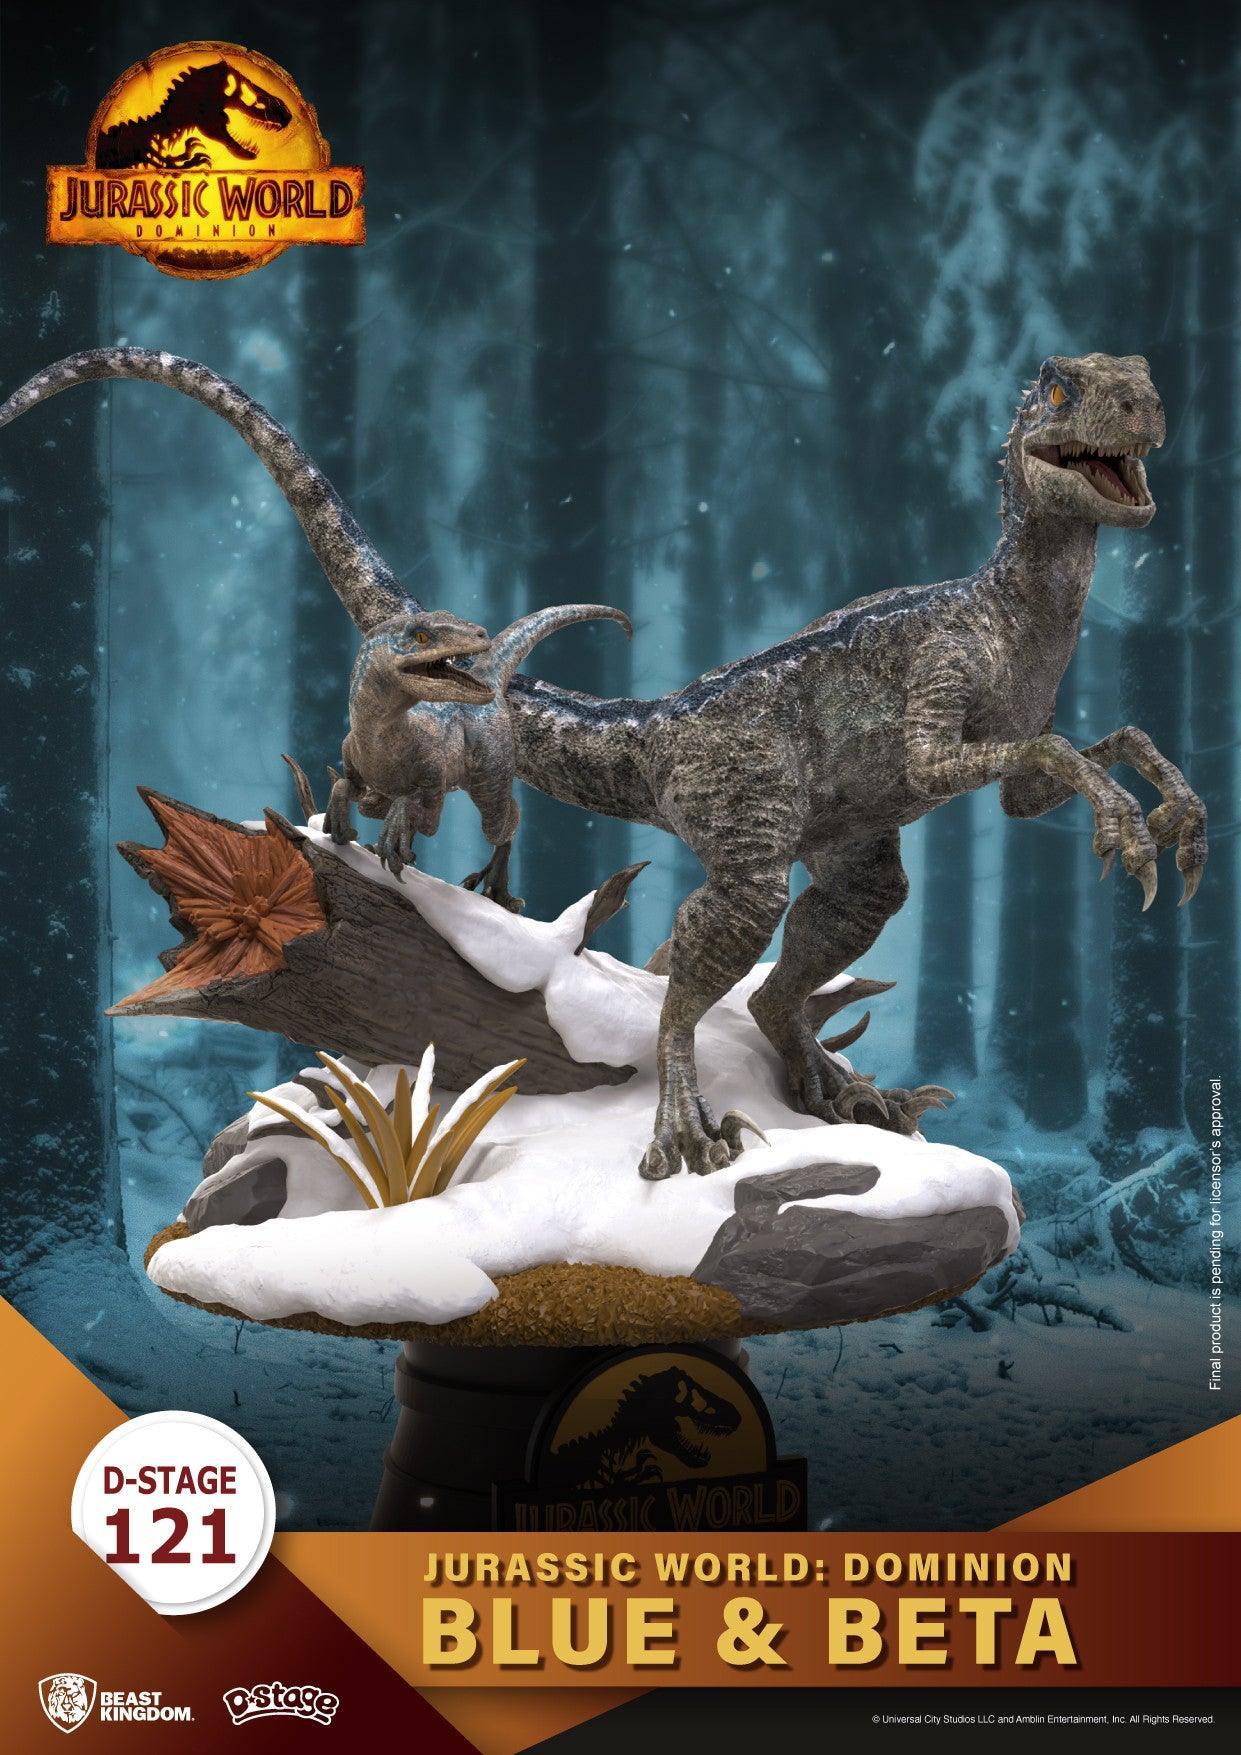 VR-100564 Beast Kingdom D Stage Jurassic World Dominion Blue & Beta - Beast Kingdom - Titan Pop Culture